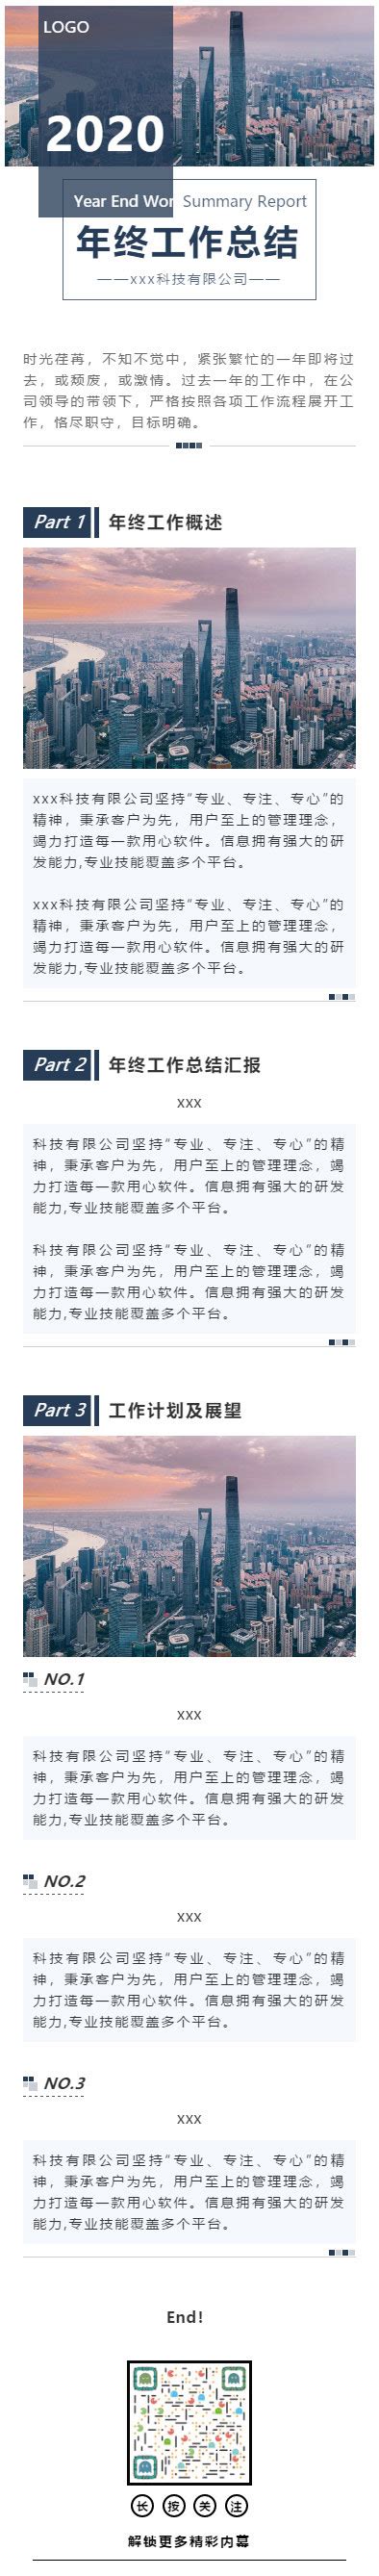 猪年祝福春节除夕新春中国年推文模板图文素材 | 微信公众号文章模板大全